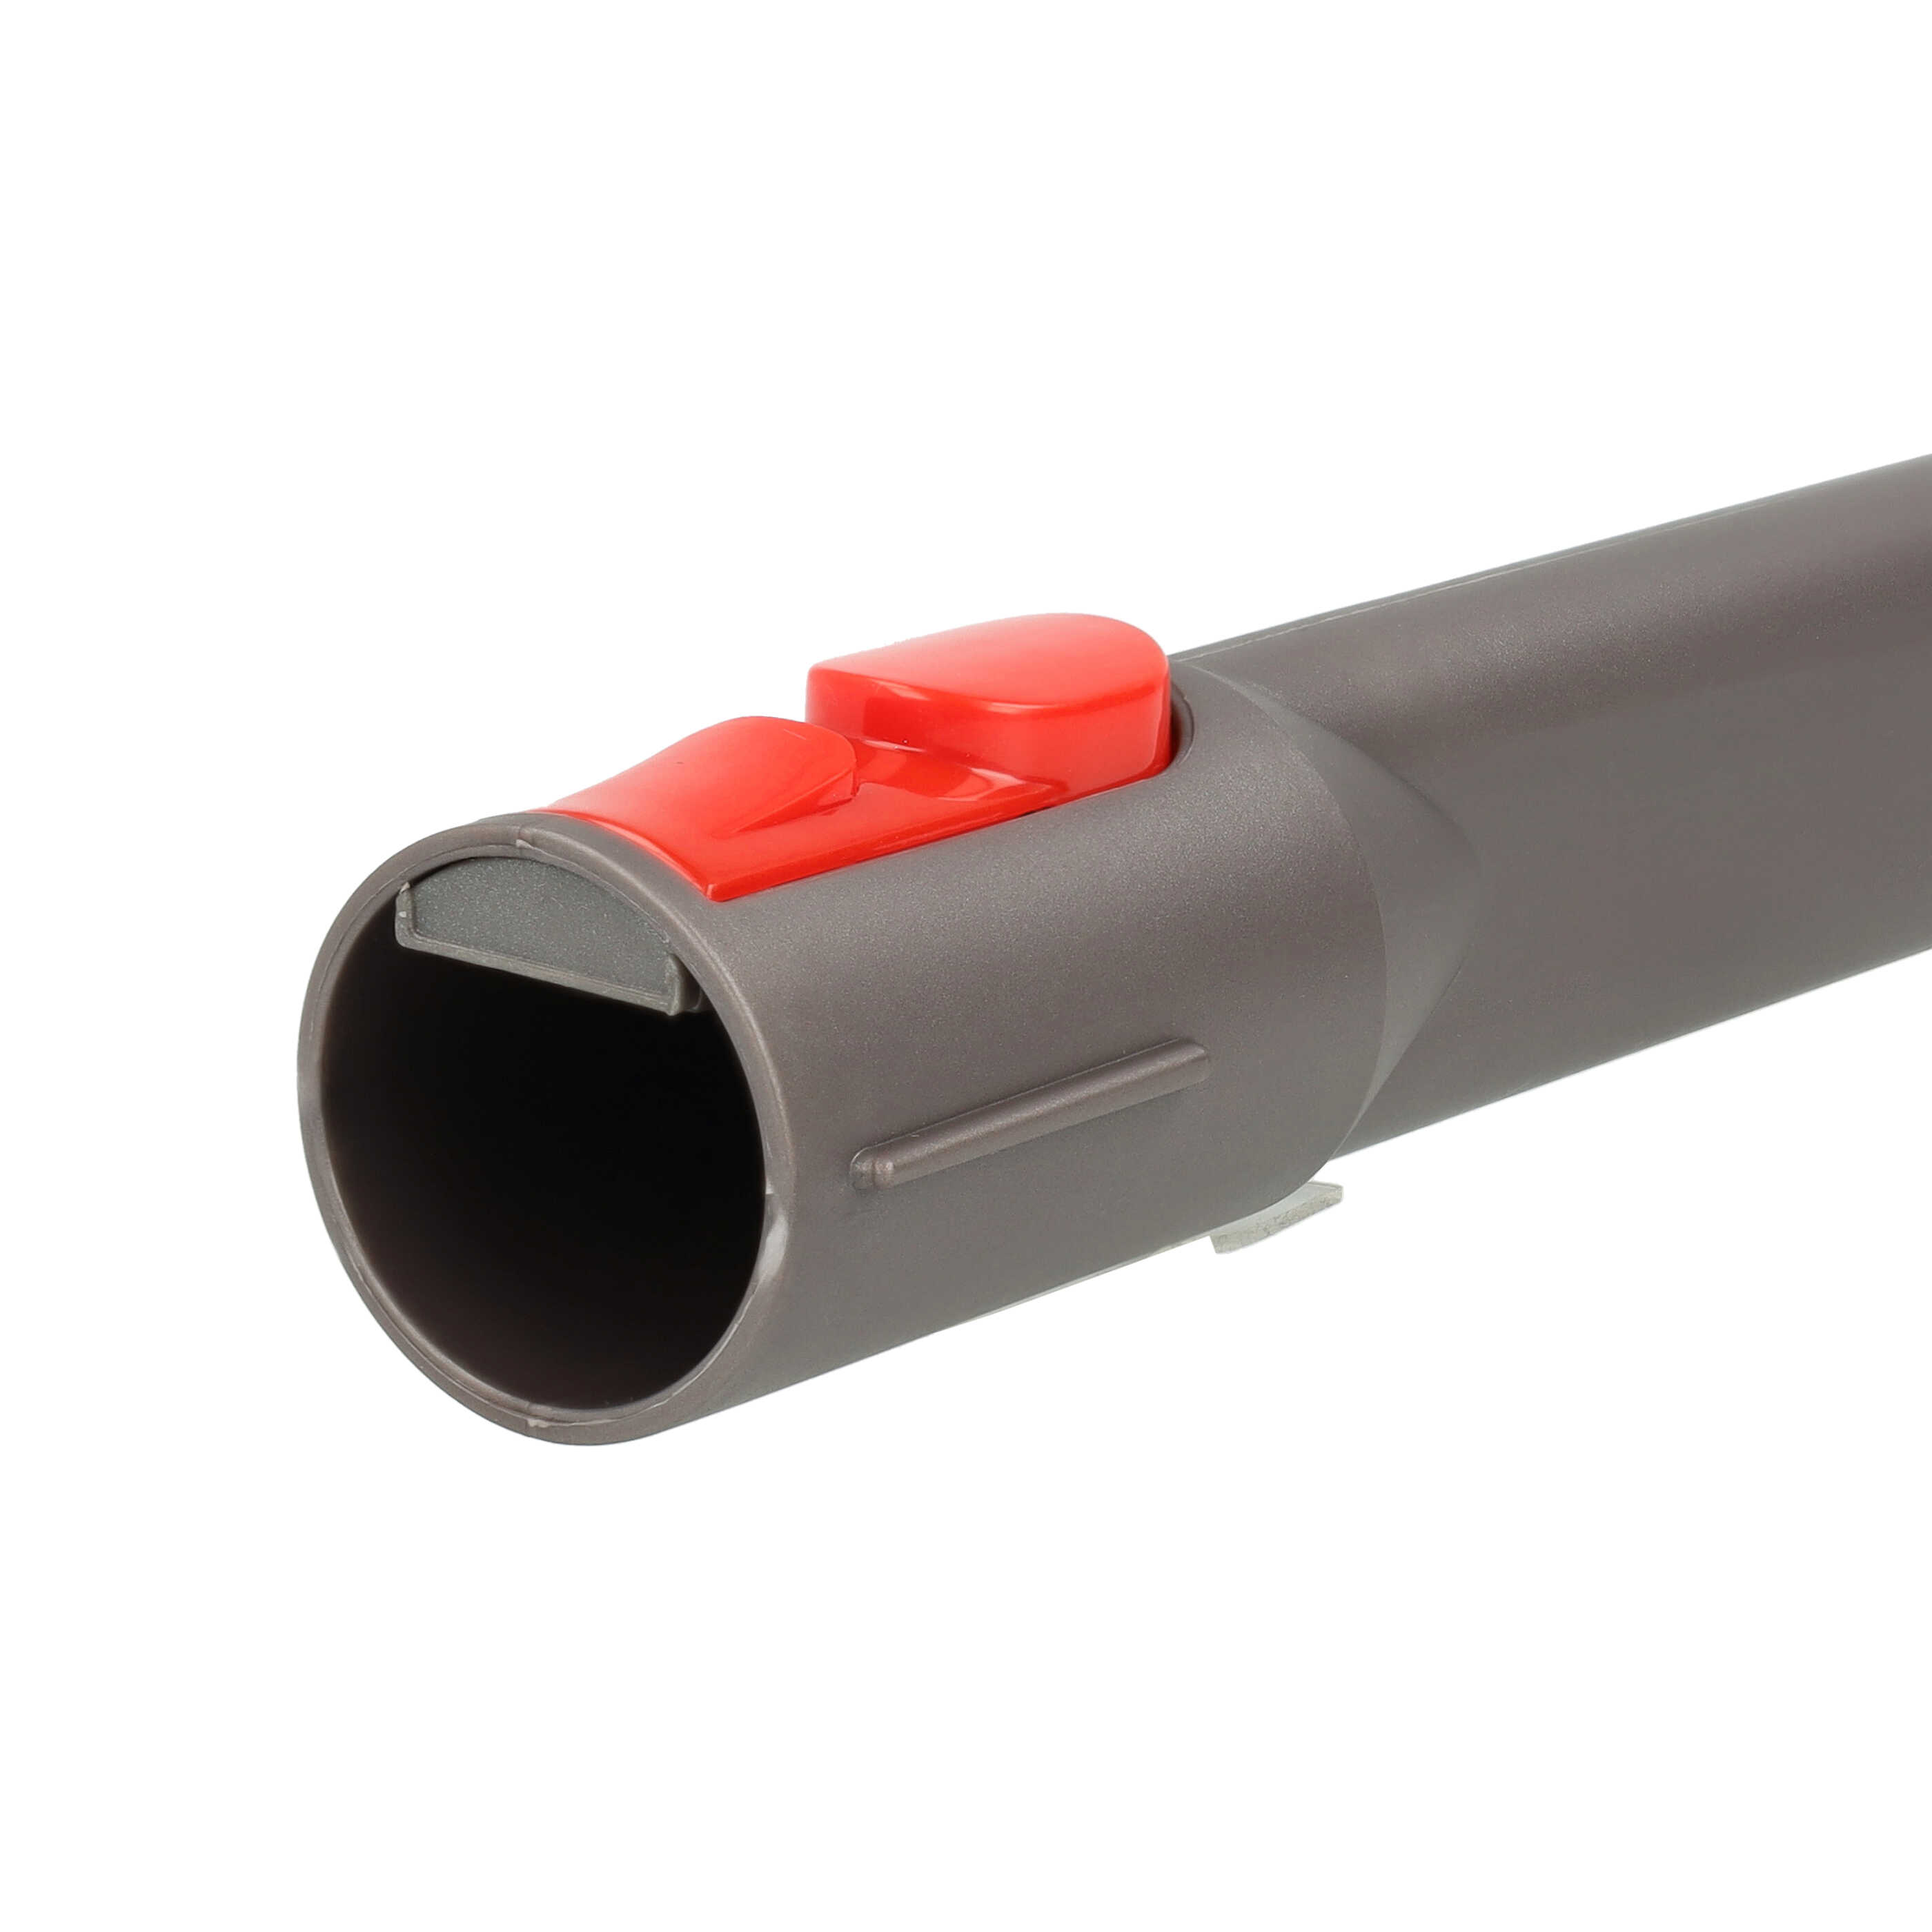 Vacuum Cleaner Crevice Nozzle replaces Dyson 967612-01 suitable for Dyson - 24 cm